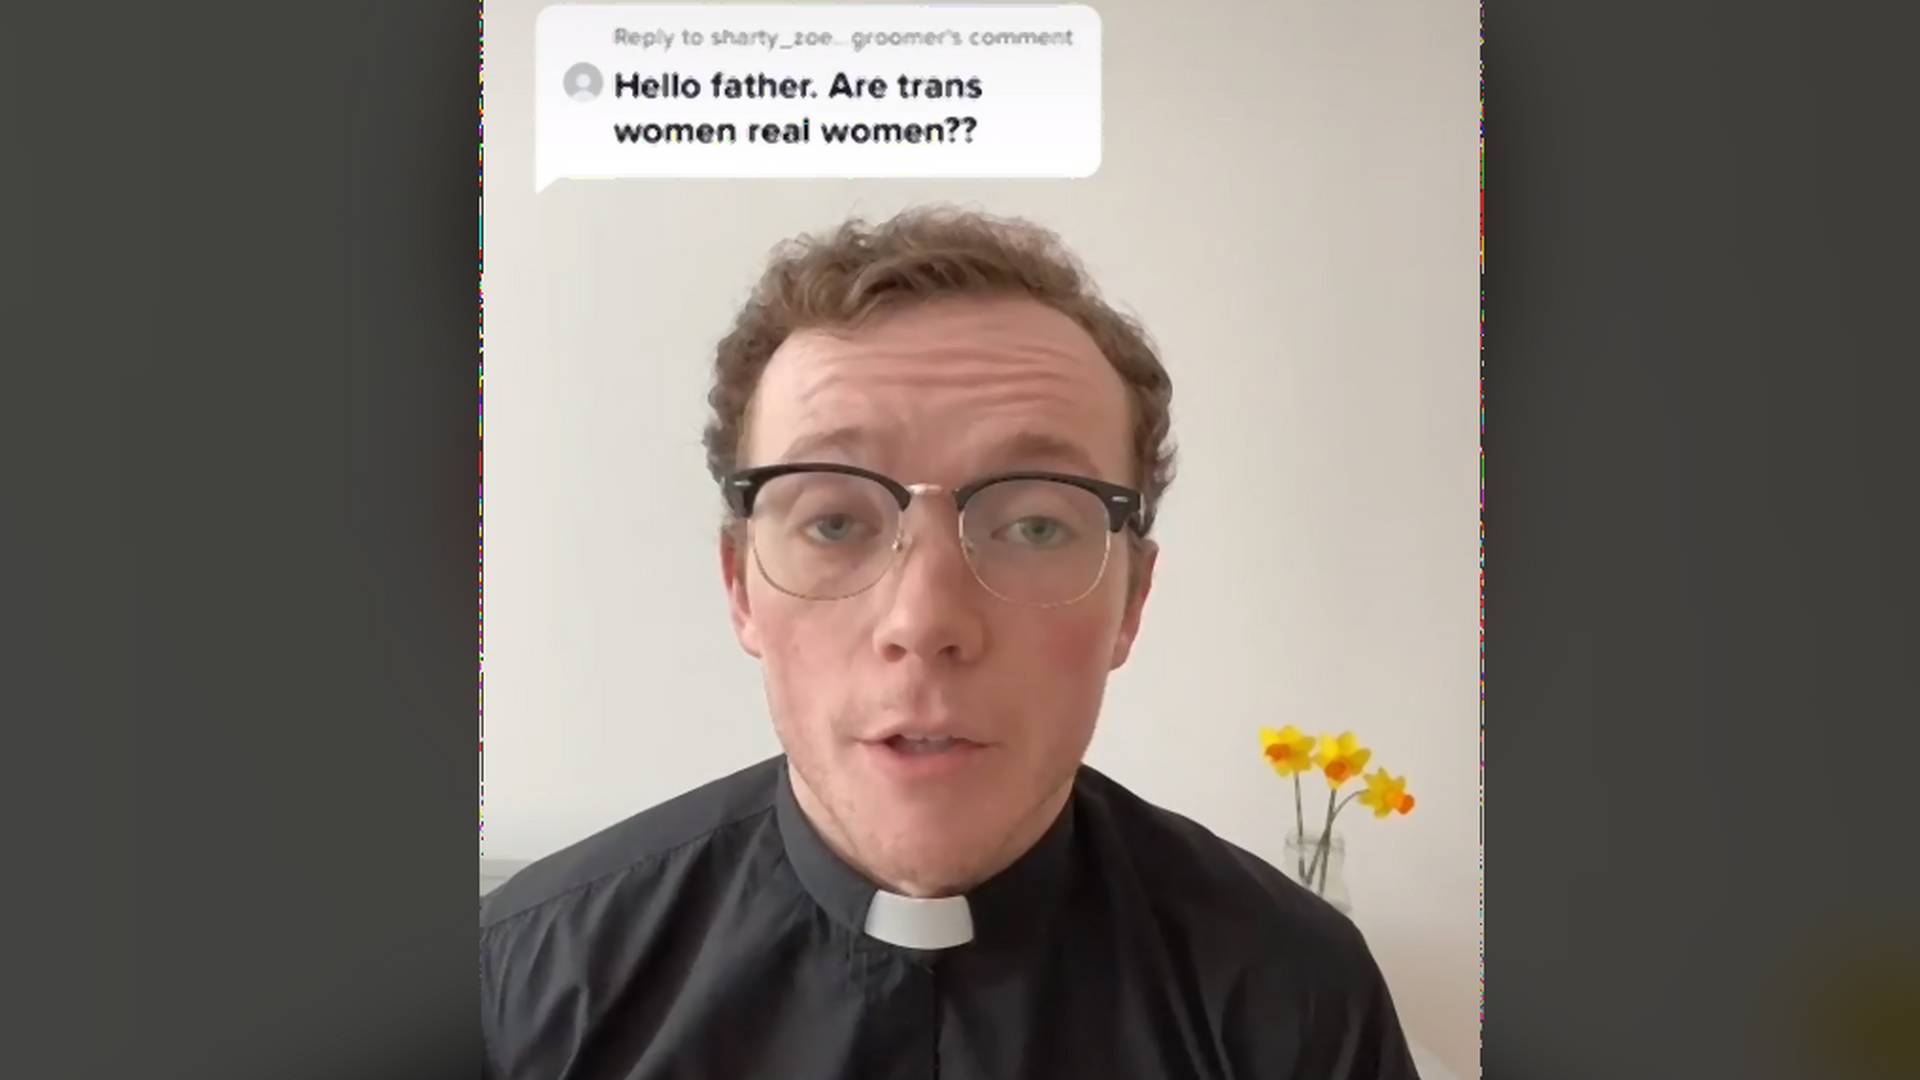 Mutatjuk a papot, aki annyira felvilágosult, hogy gond nélkül elfogadja a transzneműséget és ezt bátran vállalja TikTok-on